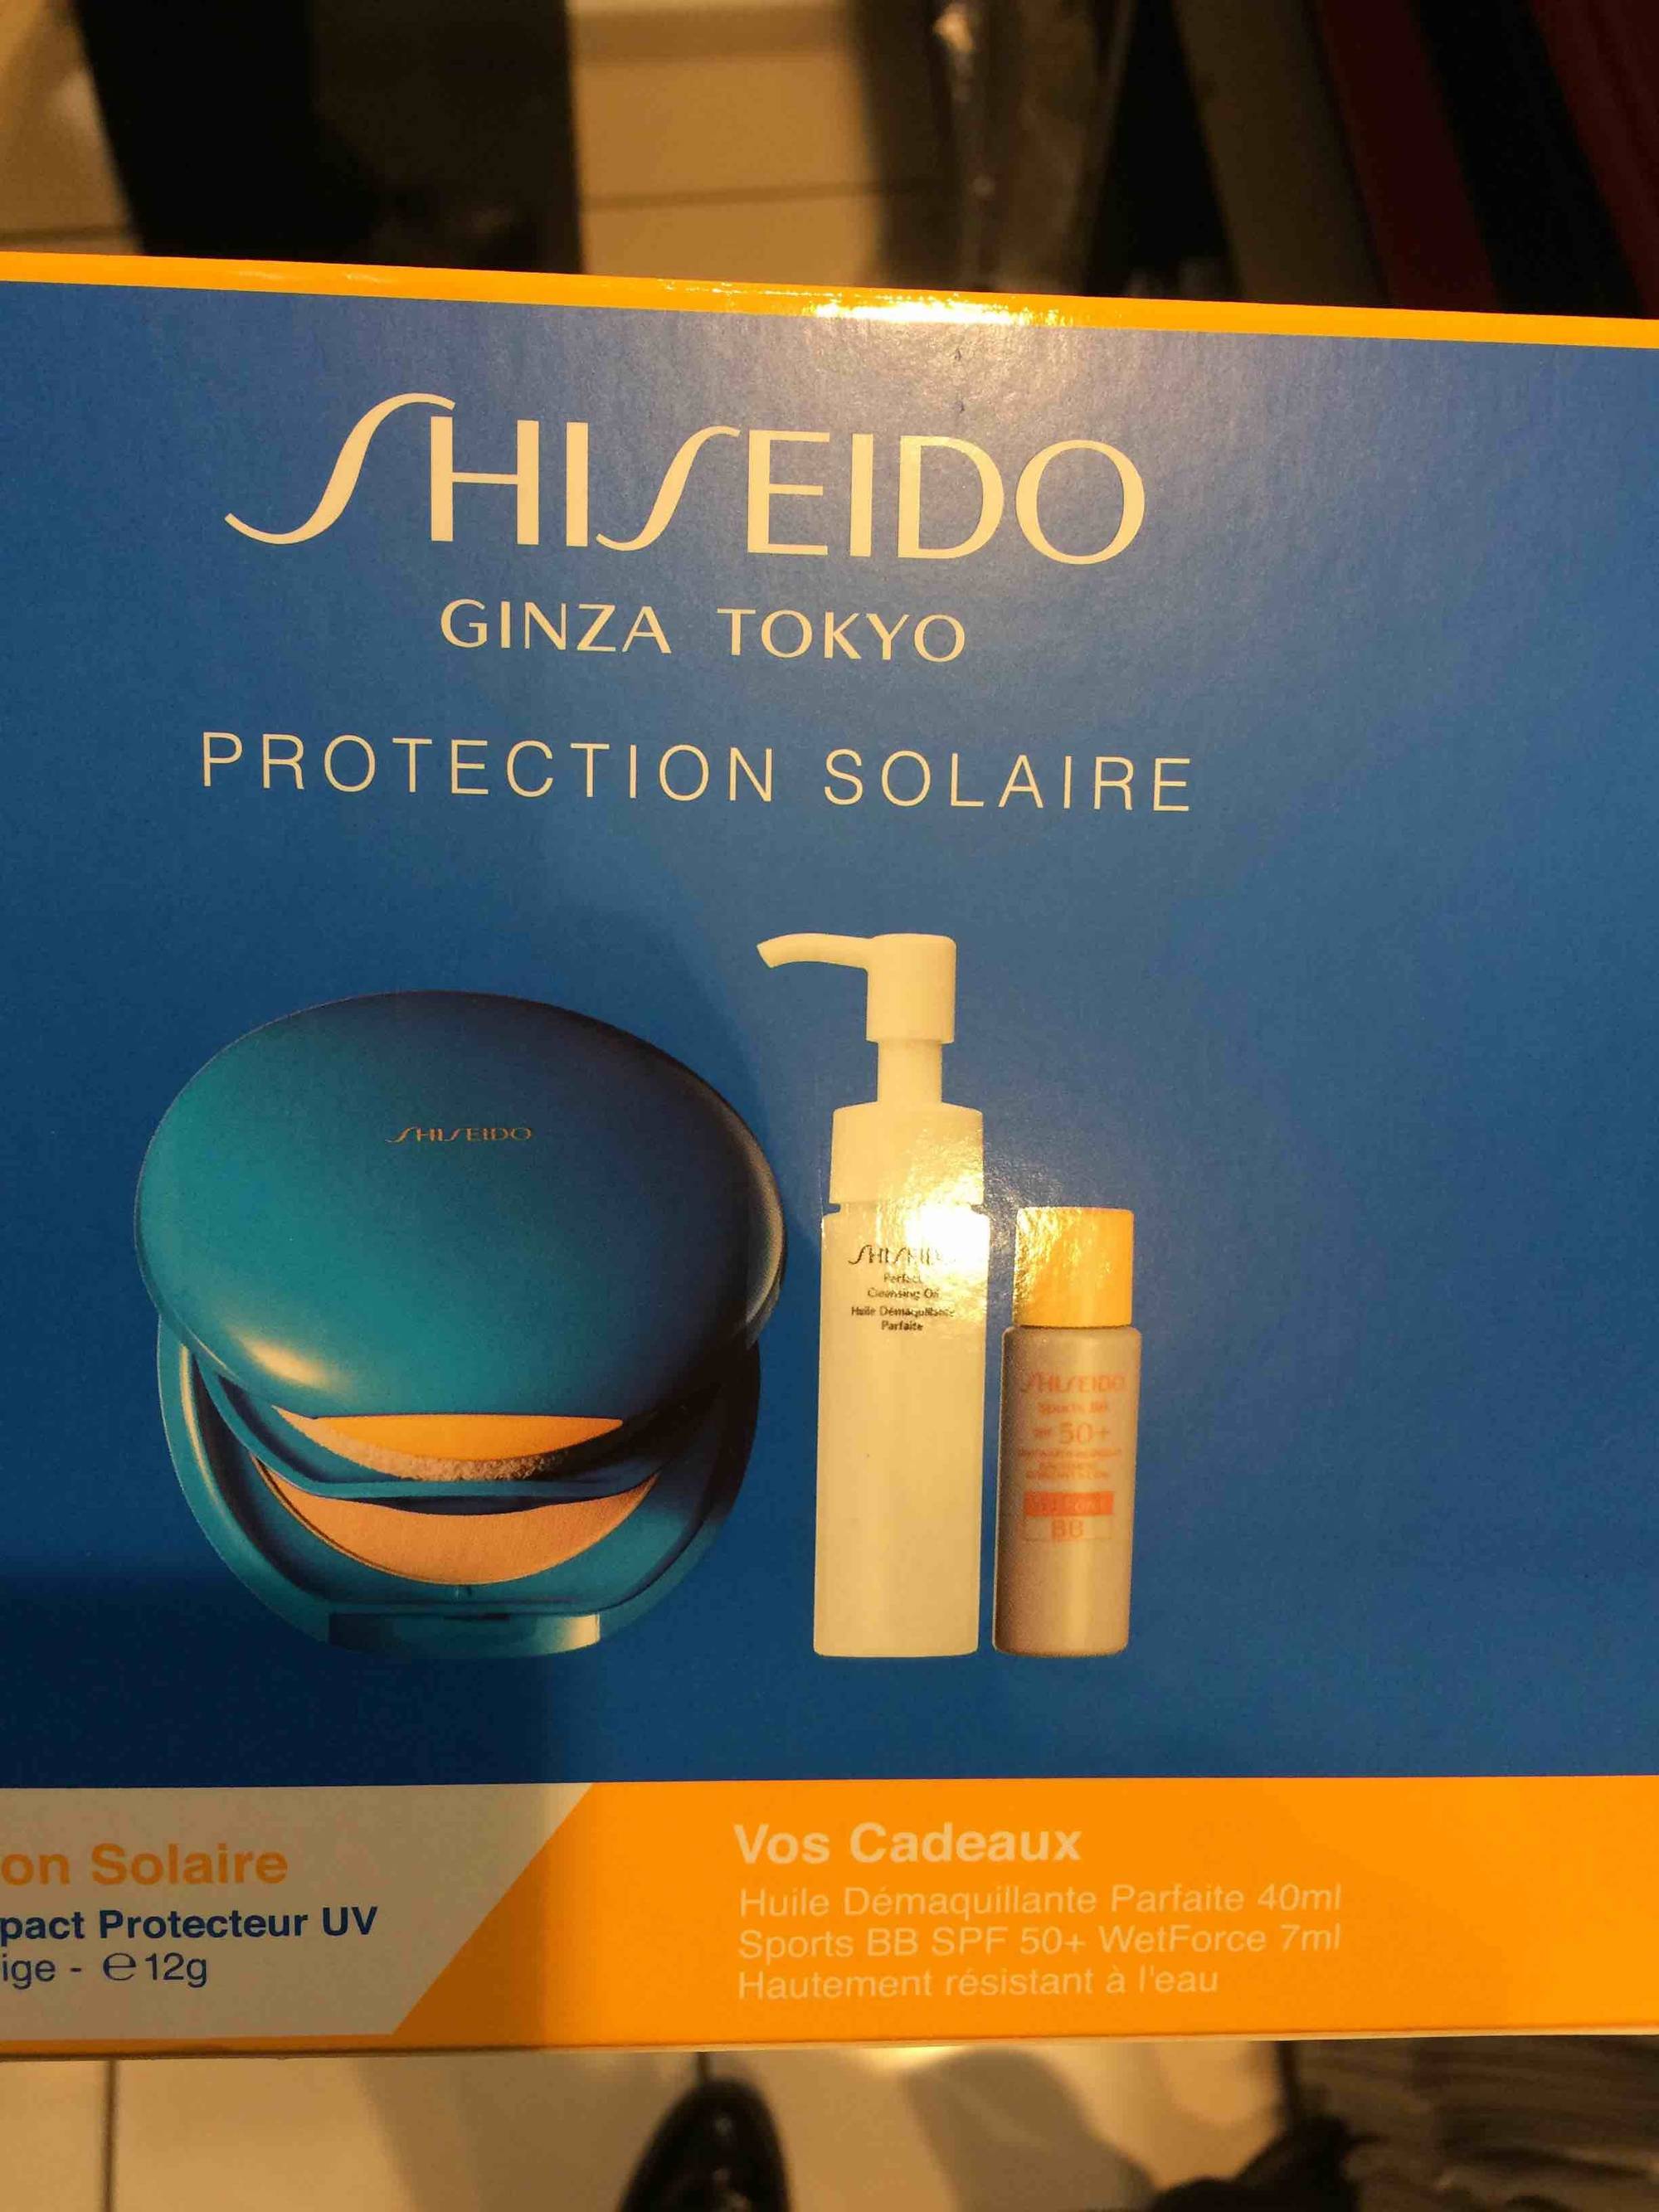 SHISEIDO - Protection solaire - Fond de teint , huile démaquillante et BB cream 